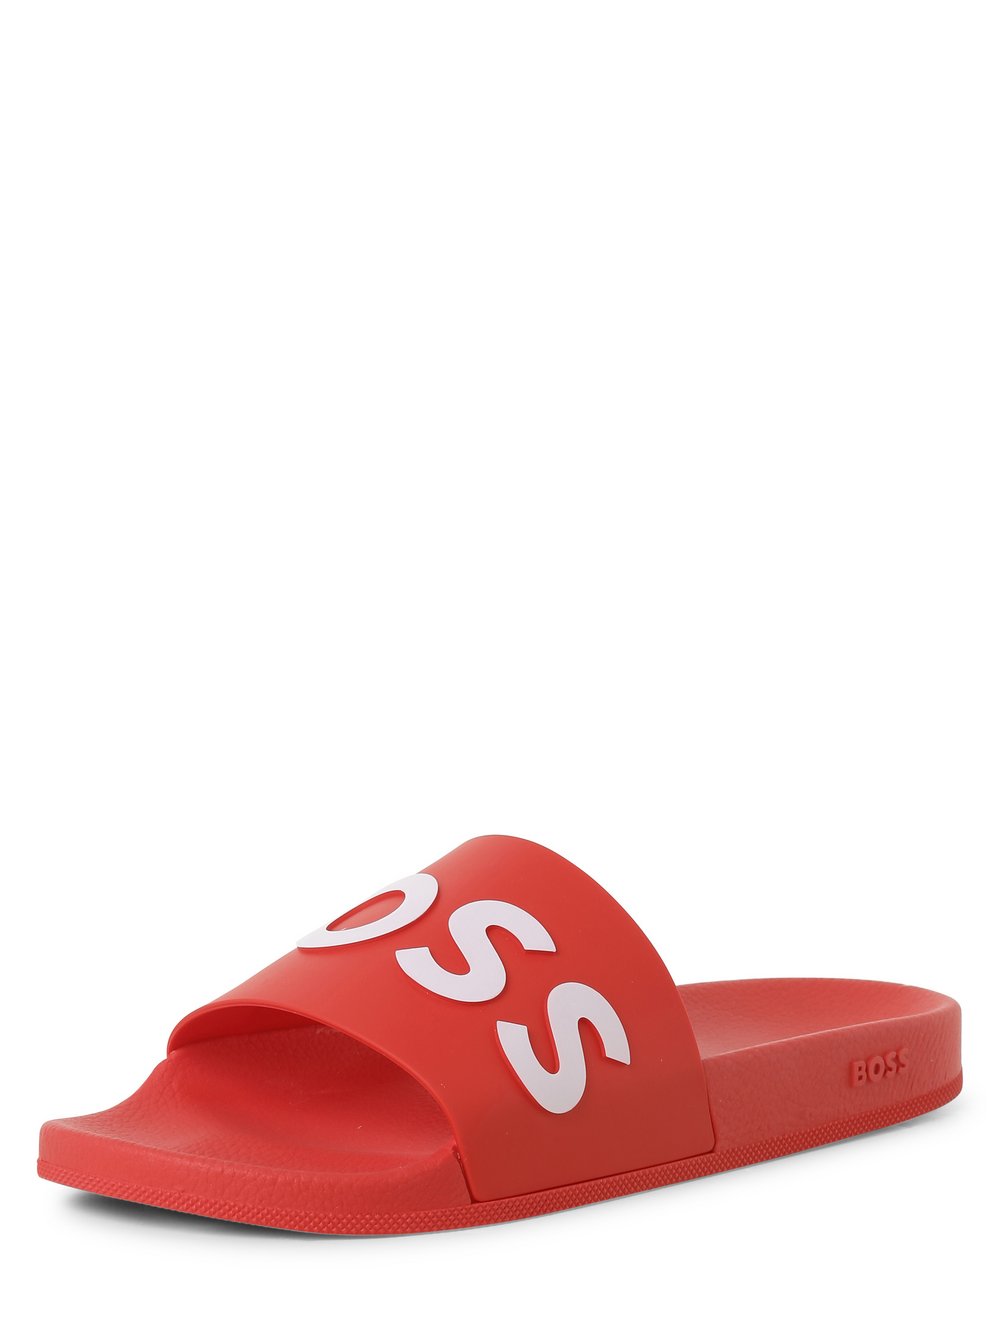 BOSS - Męskie pantofle kąpielowe – Bay_it_Slid_rblg, czerwony